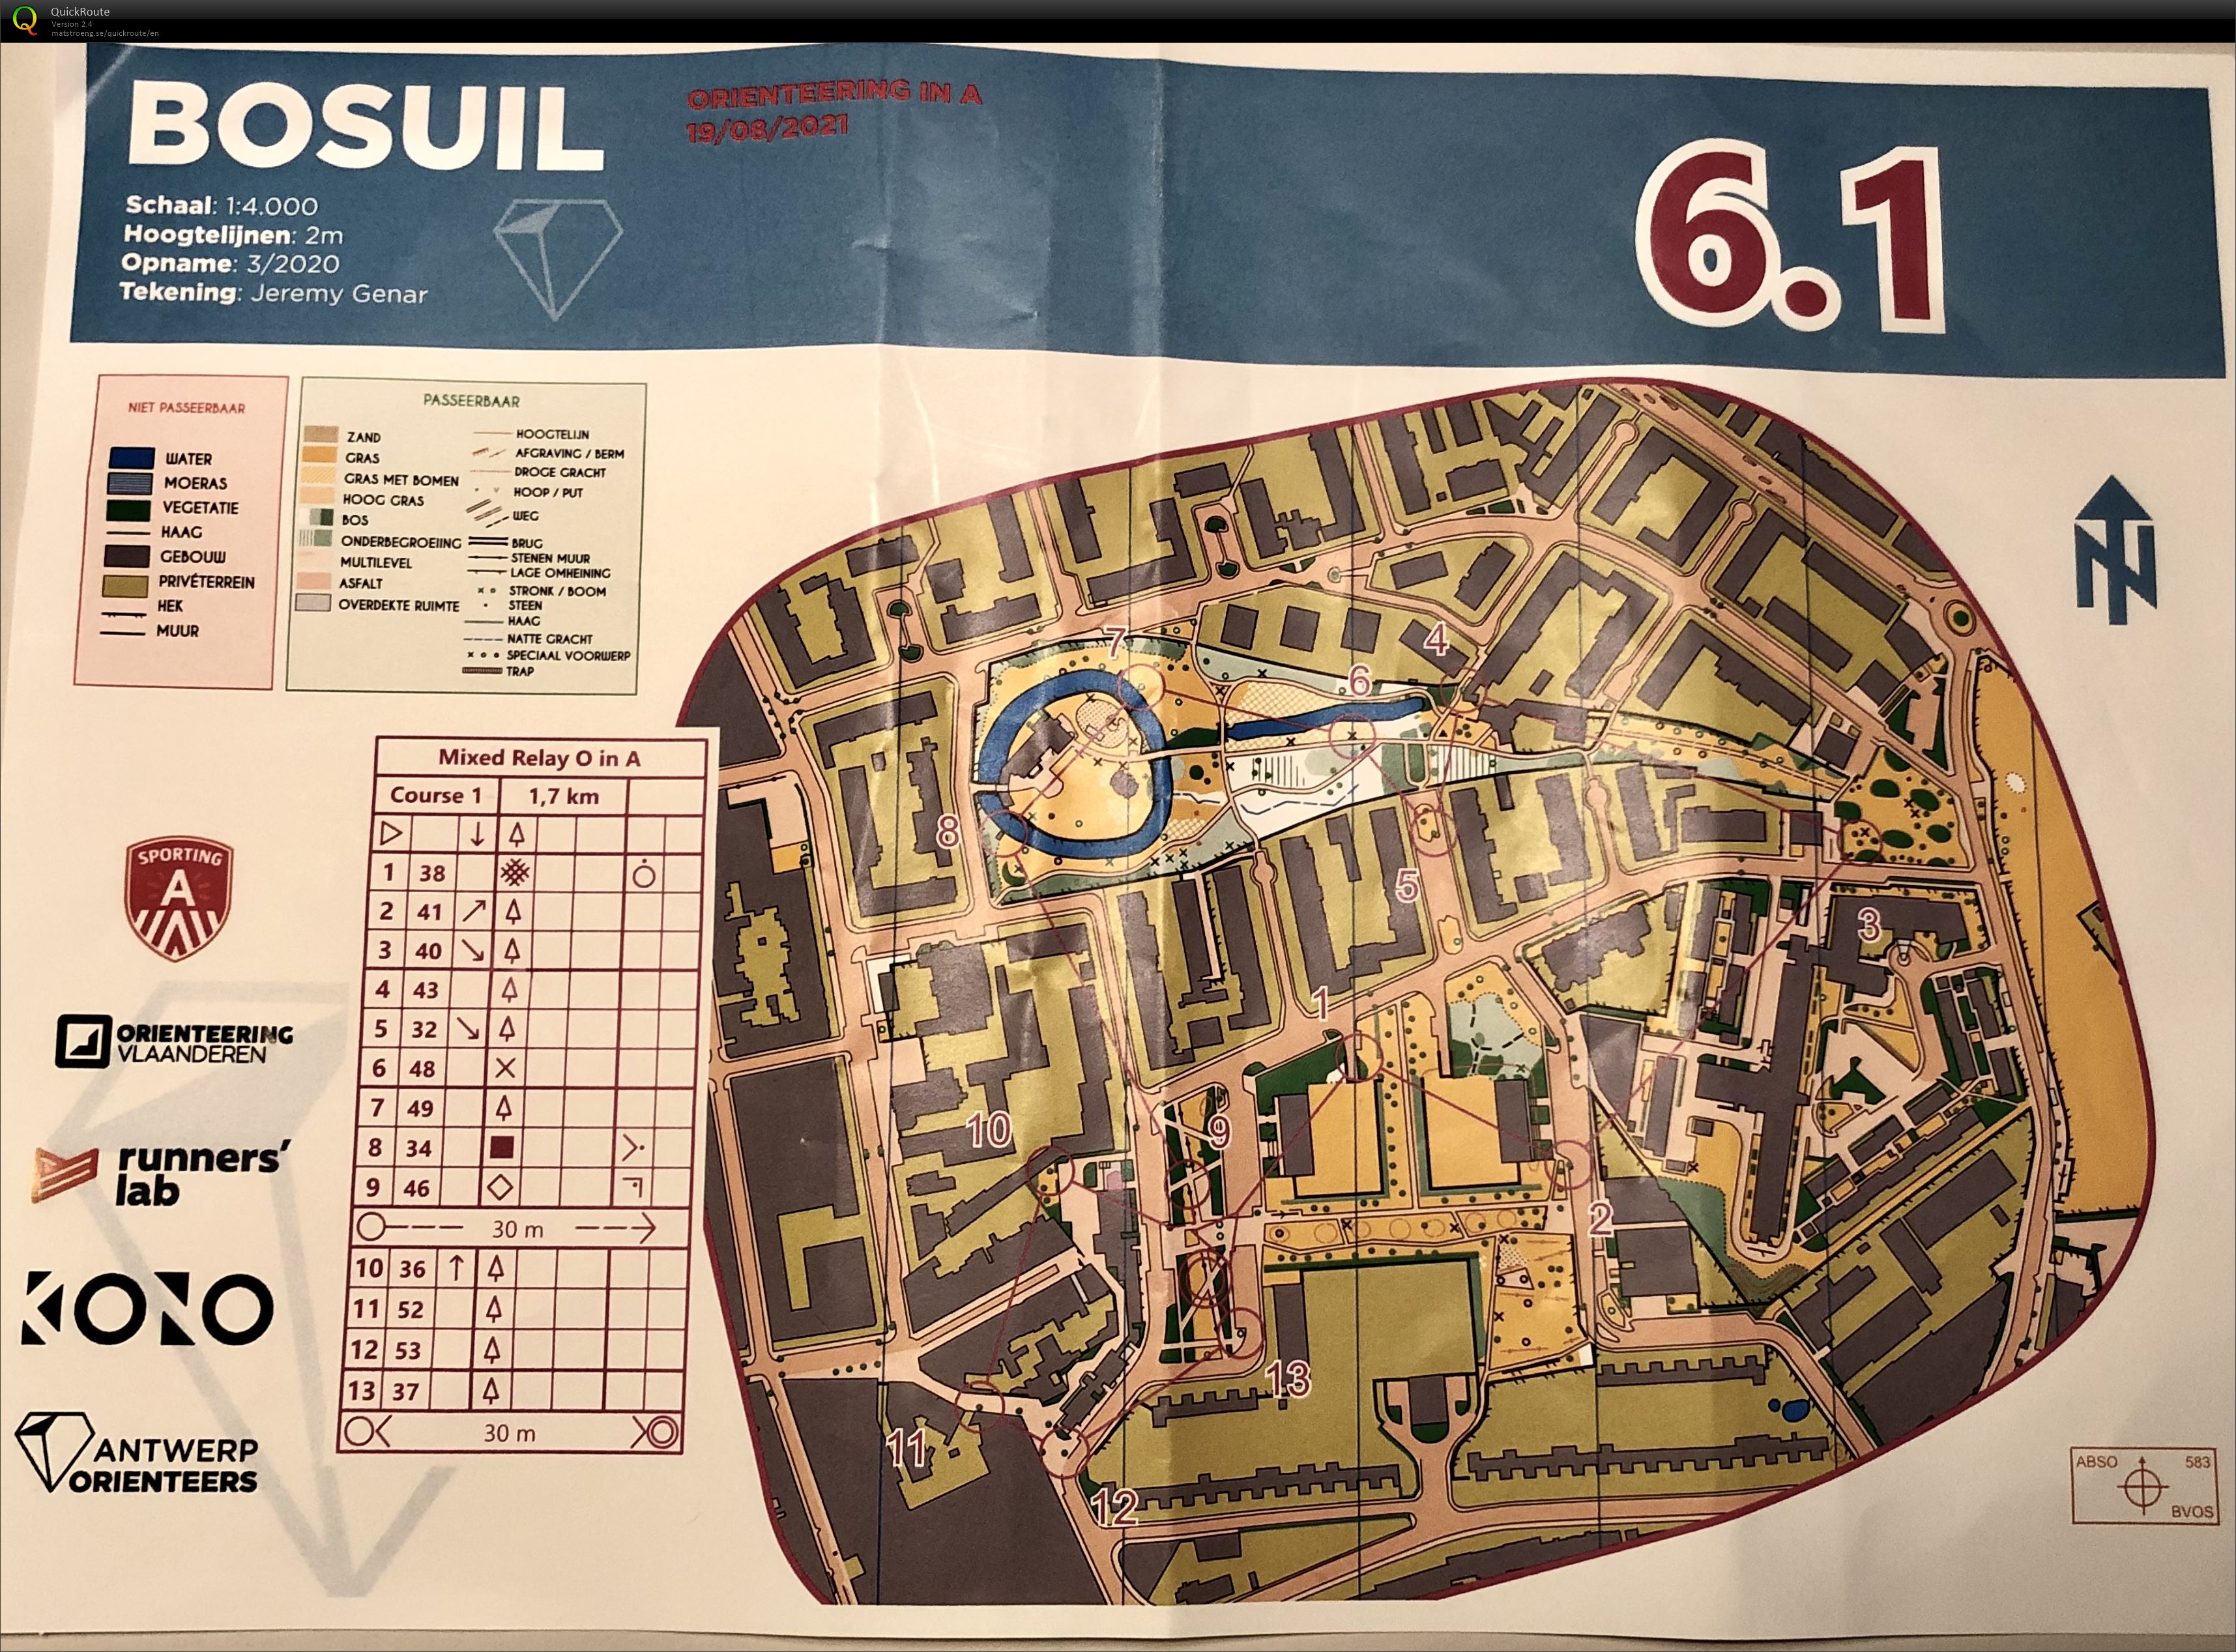 Antwerp Orienteers - Team Relay Bosuil 6.1 (19.08.2021)